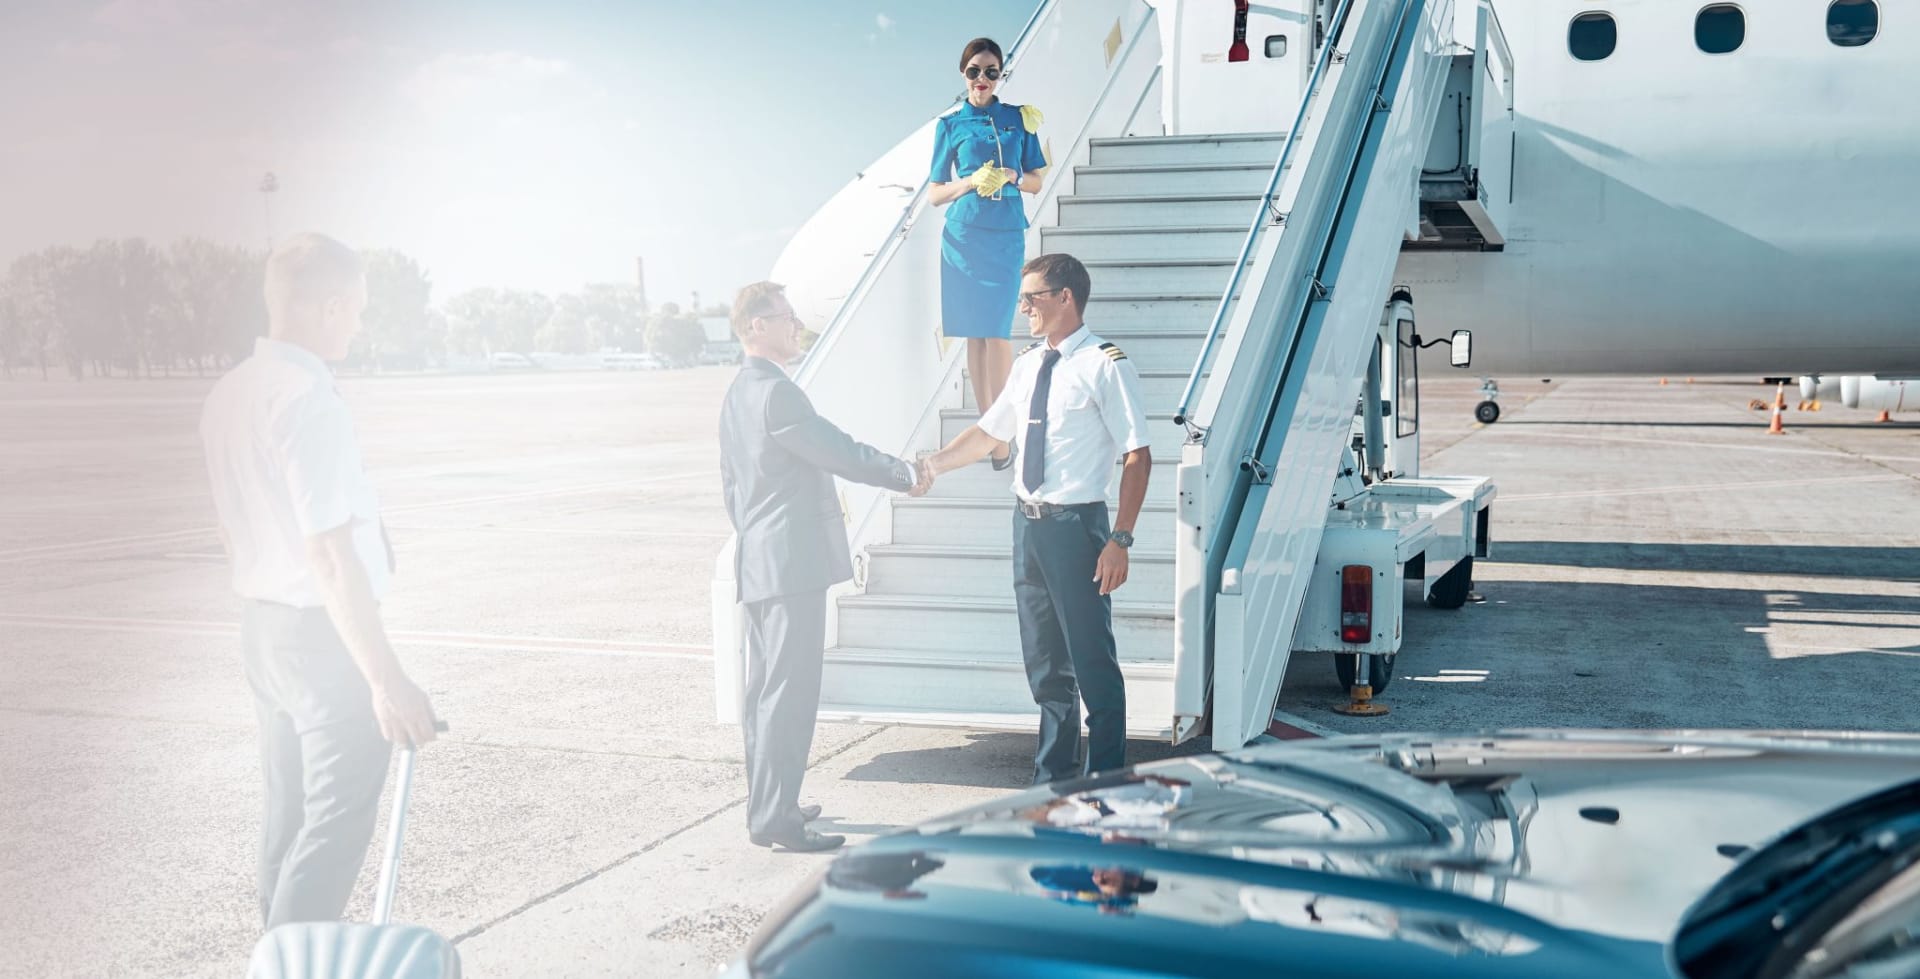 Executive flights handling by Aviapartner